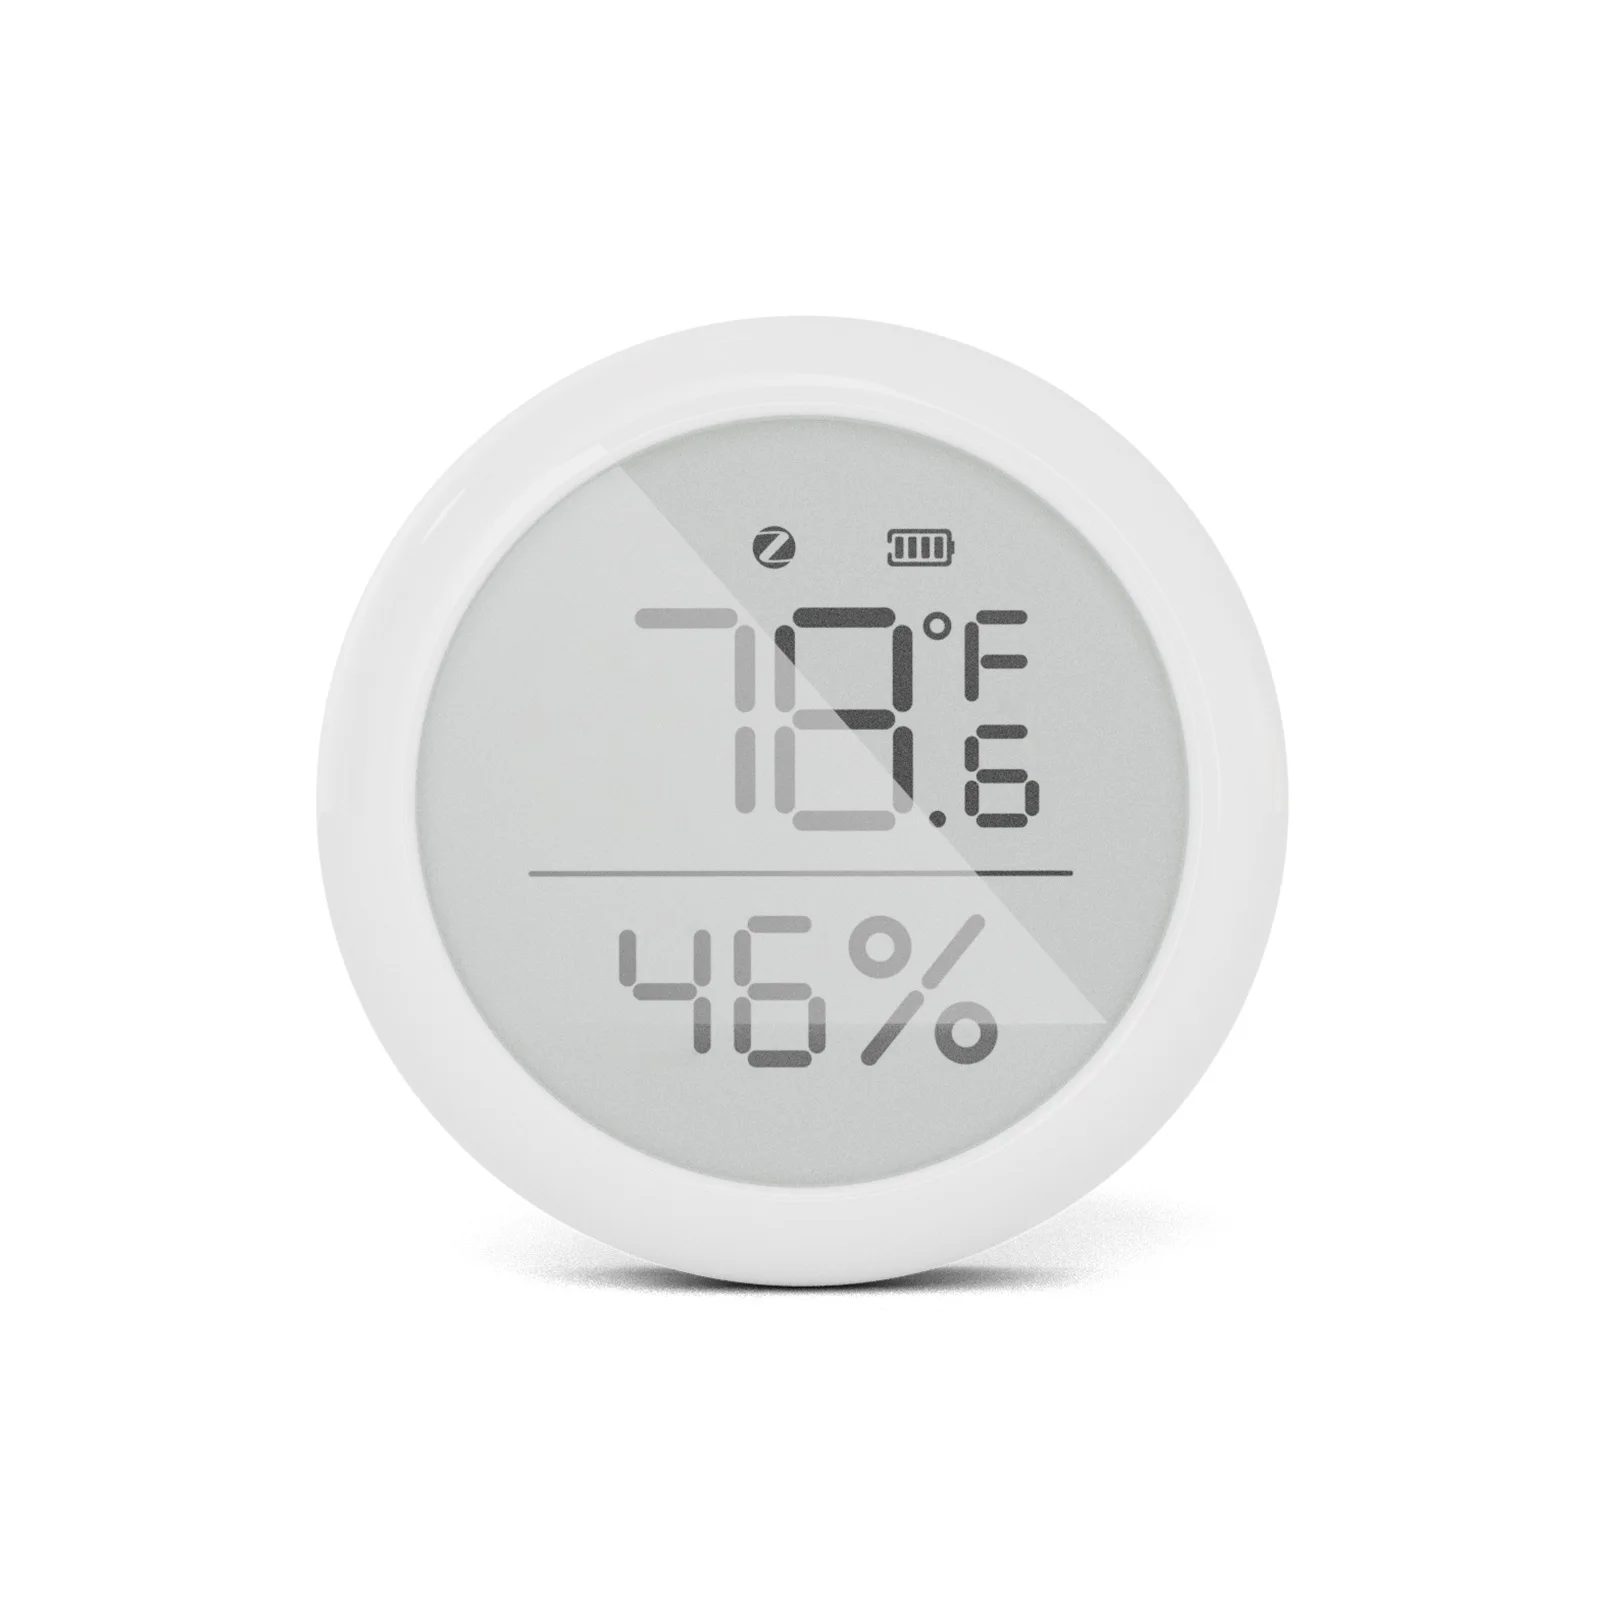 

Датчик температуры и влажности с дистанционным управлением, термометр с ЖК-дисплеем, комнатный мини-гигрометр для умного дома Zigbee